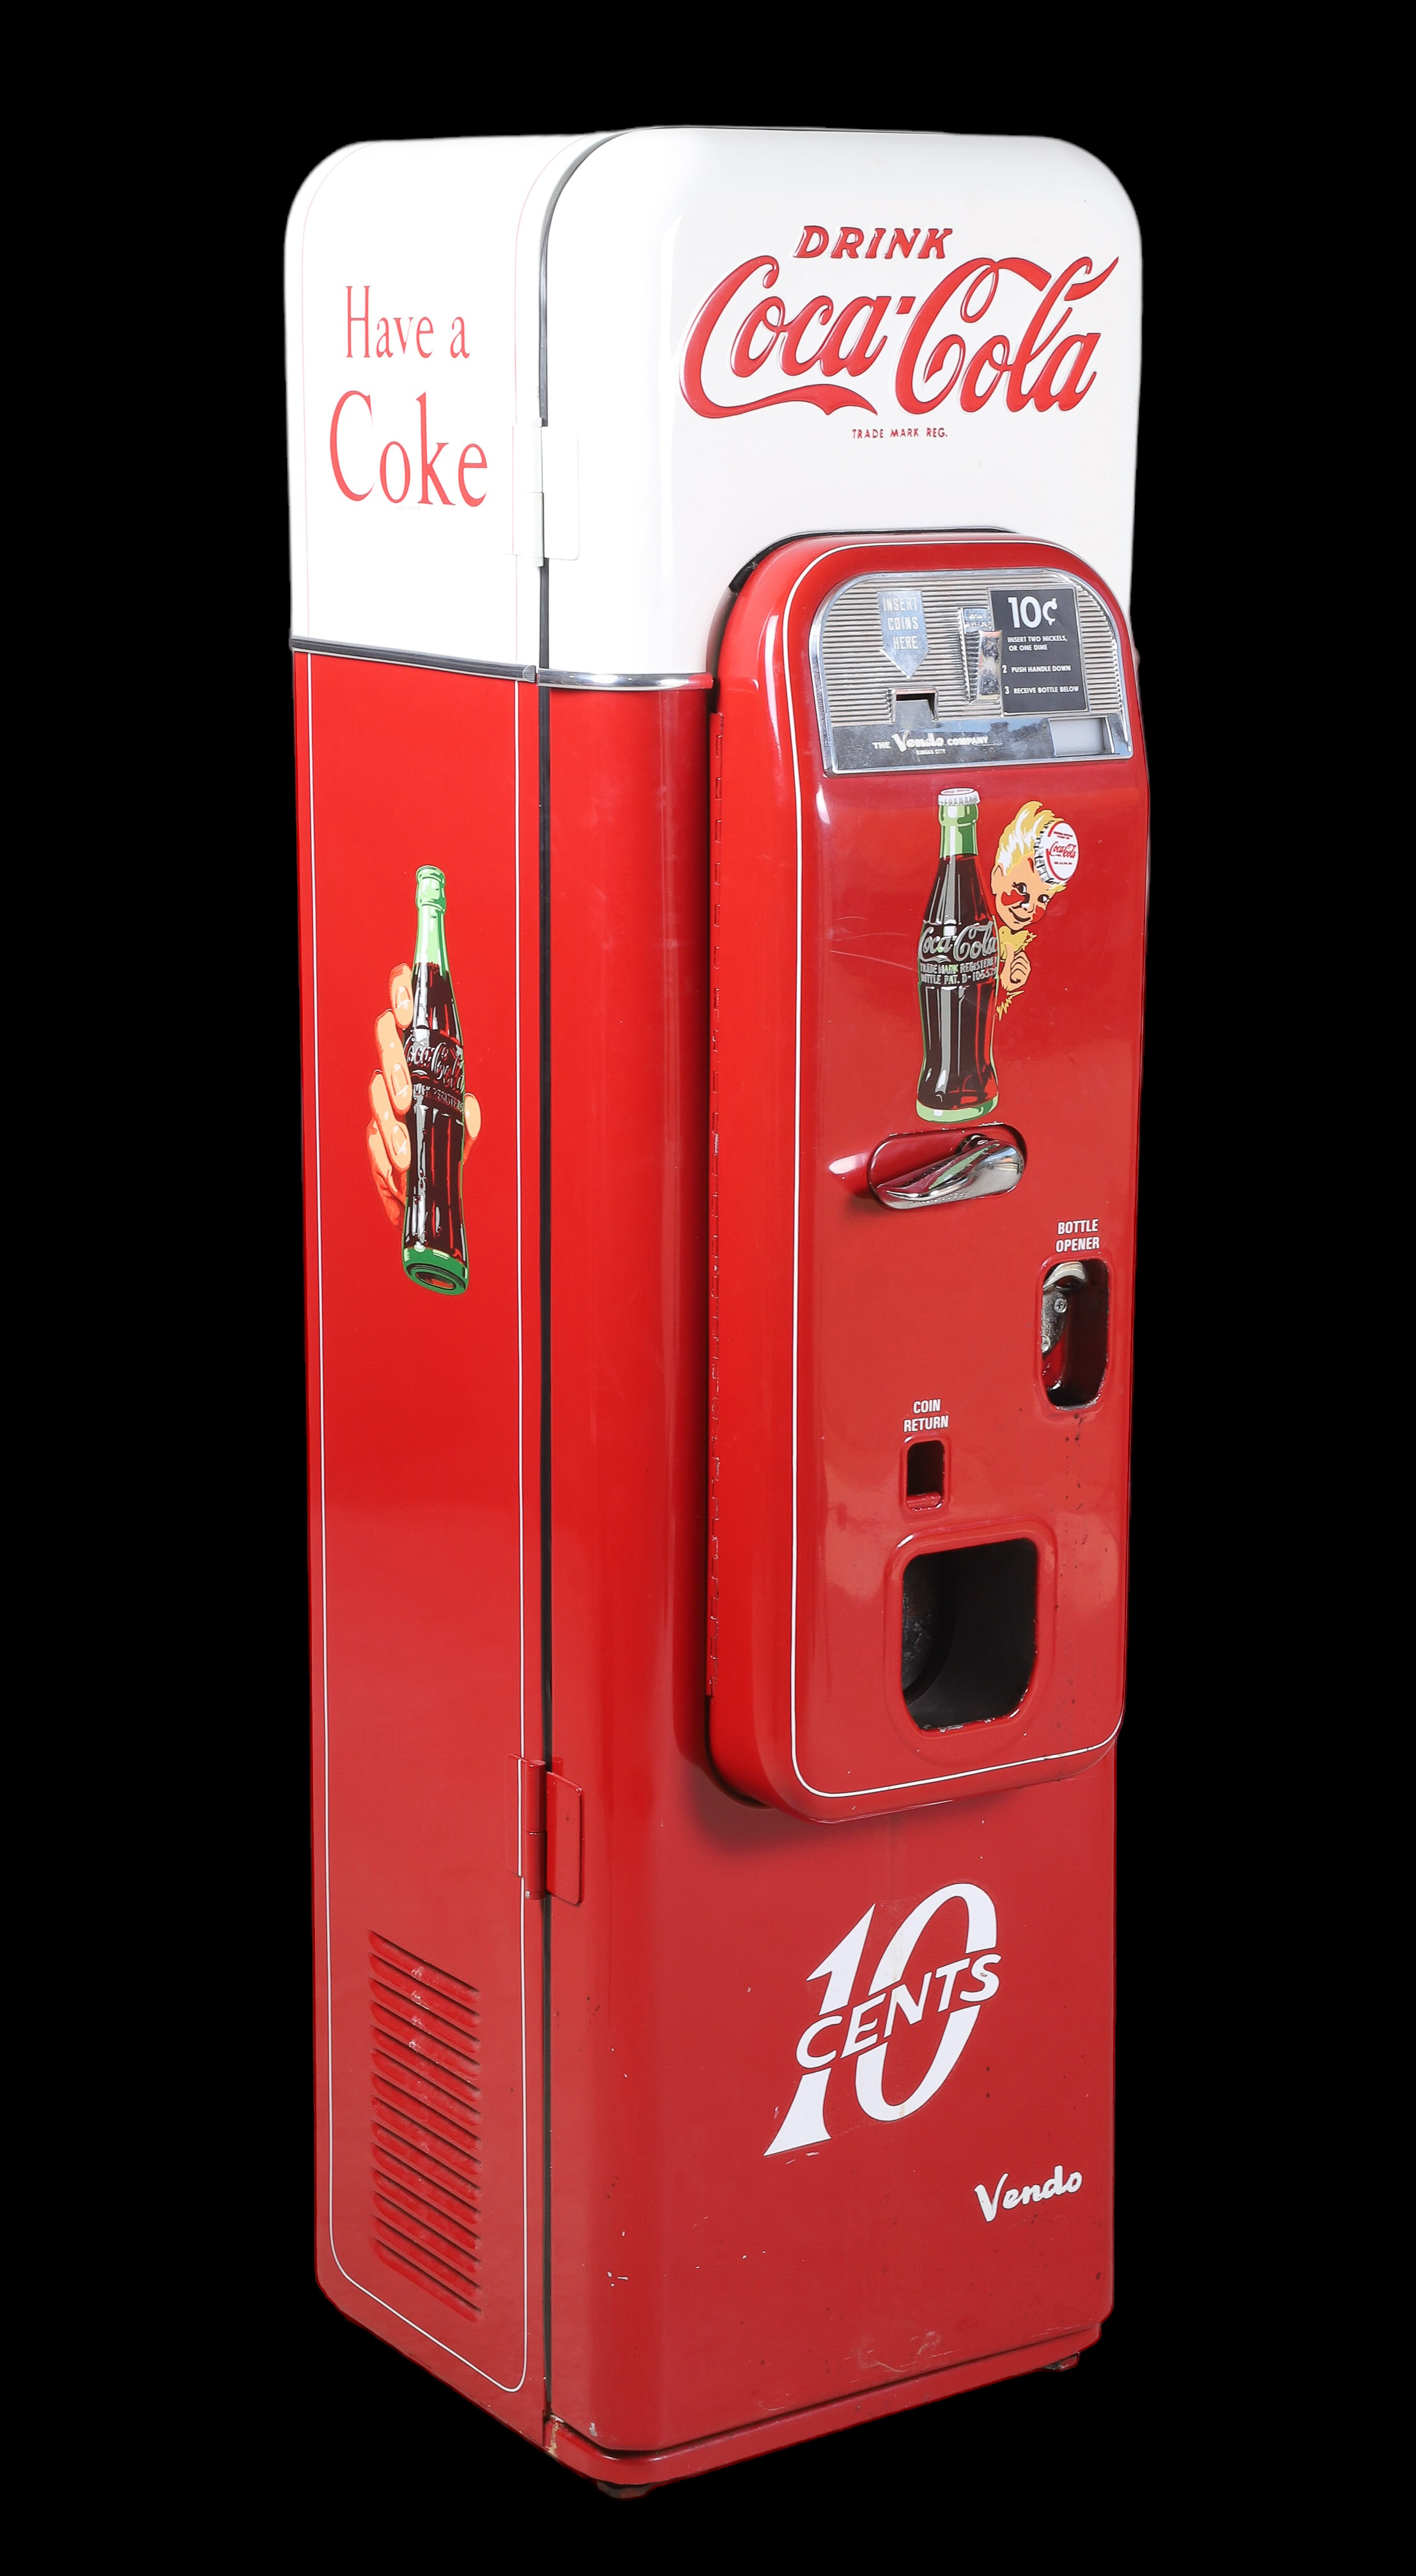 Model 44 Coca Cola 10 cent vending 2e1d0d